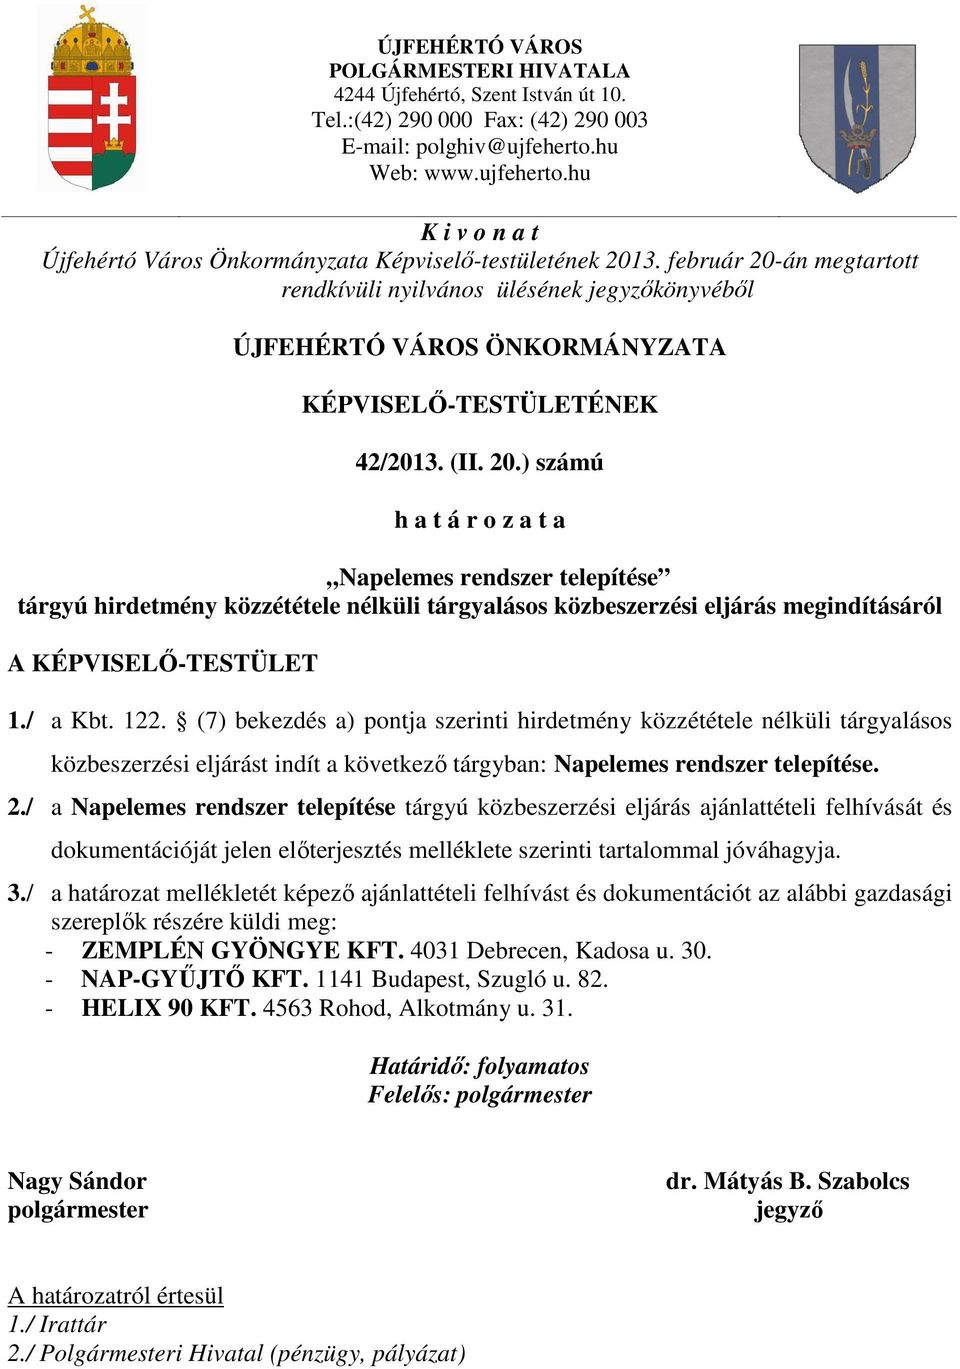 február 20-án megtartott rendkívüli nyilvános ülésének jegyzőkönyvéből ÚJFEHÉRTÓ VÁROS ÖNKORMÁNYZATA KÉPVISELŐ-TESTÜLETÉNEK 42/2013. (II. 20.) számú h a t á r o z a t a Napelemes rendszer telepítése tárgyú hirdetmény közzététele nélküli tárgyalásos közbeszerzési eljárás megindításáról A KÉPVISELŐ-TESTÜLET 1.